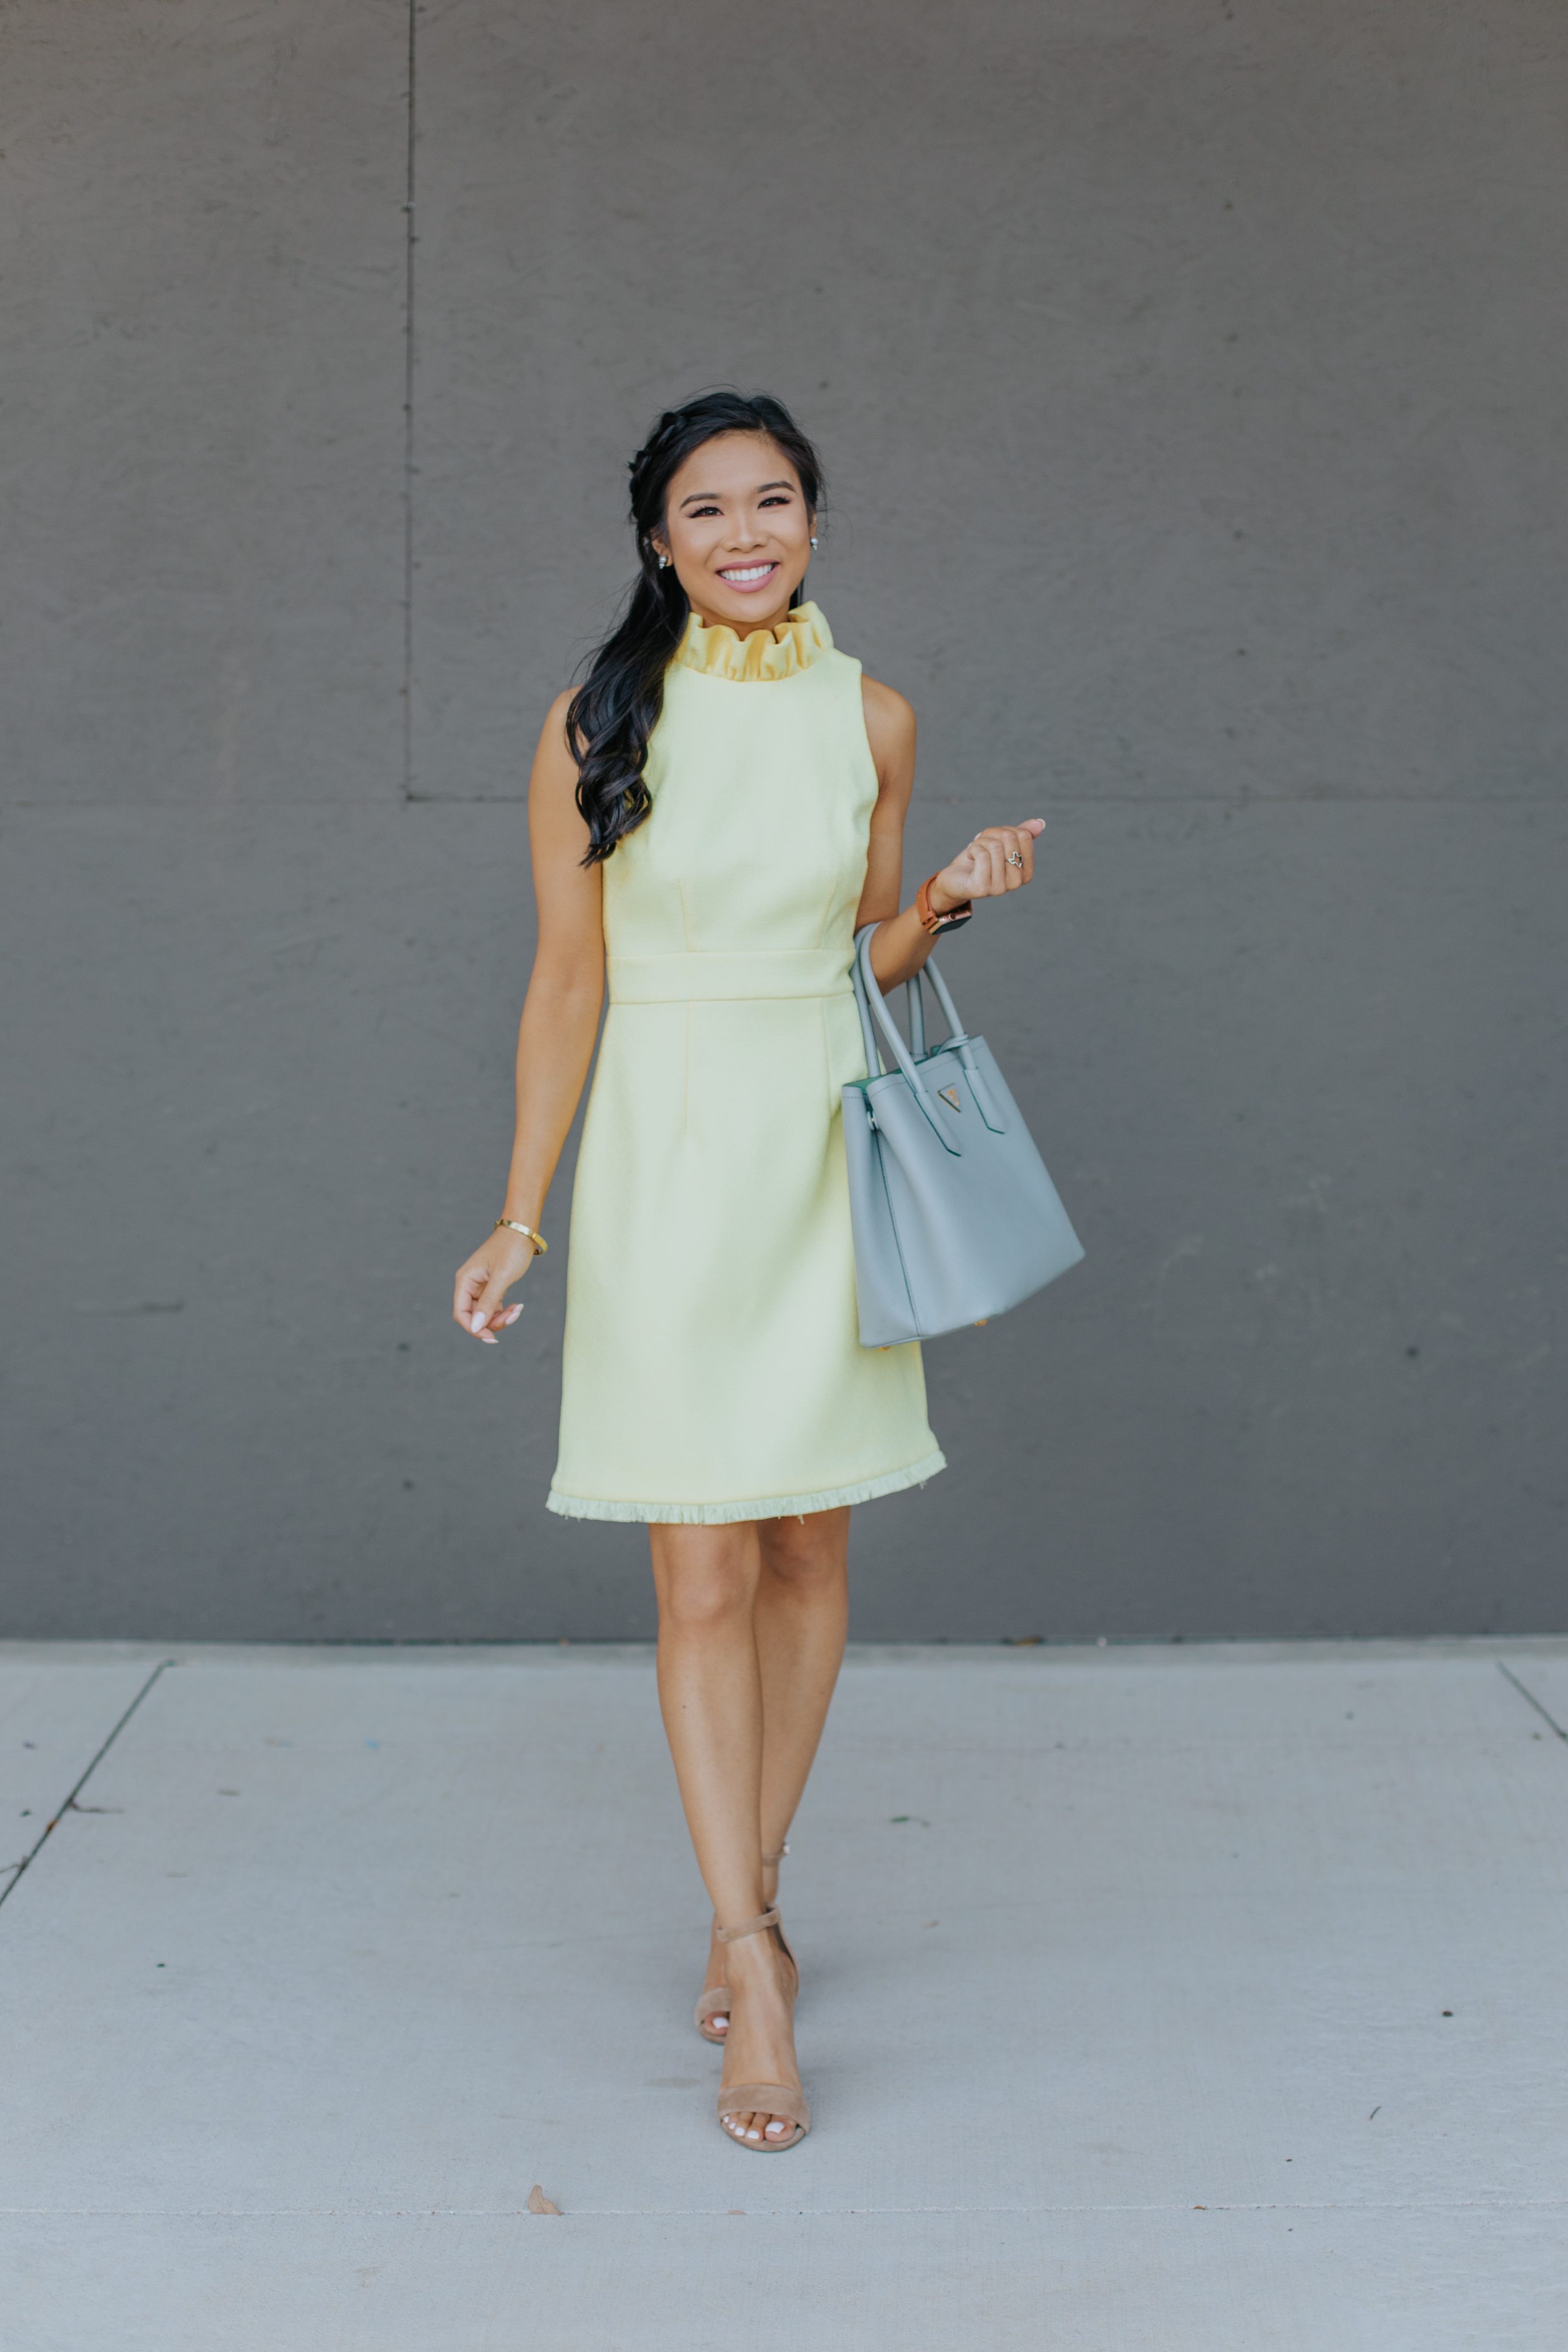 Petite Asian blogger wears an buttery yellow dress